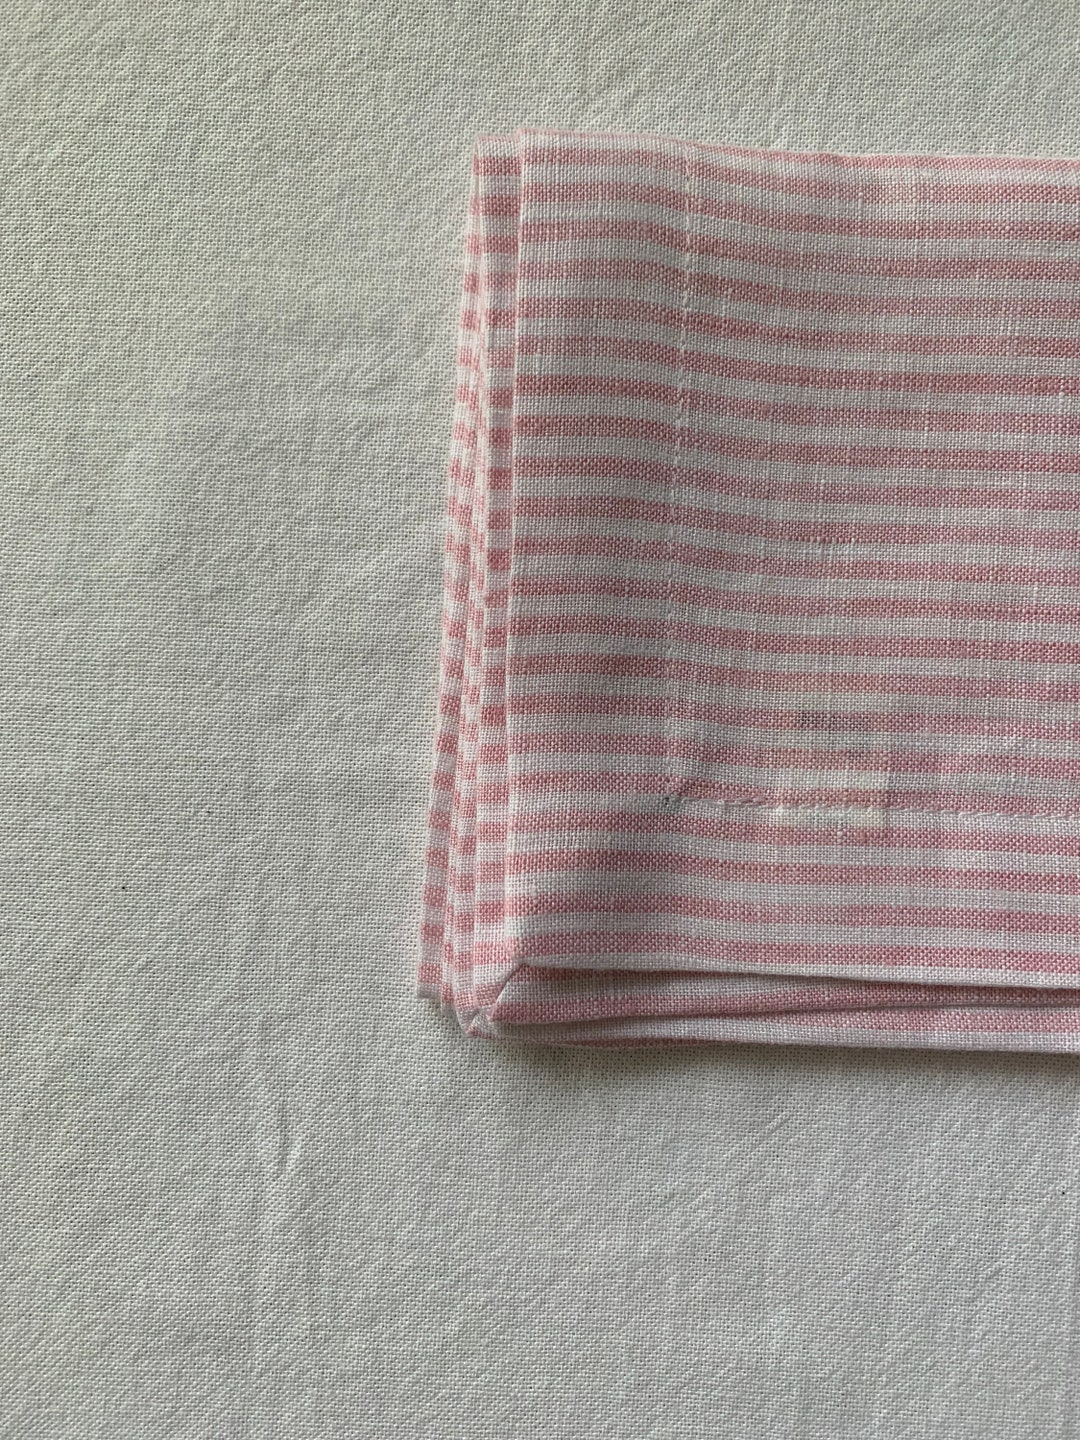 Pink & White Striped Linen Napkins - Etsy Australia